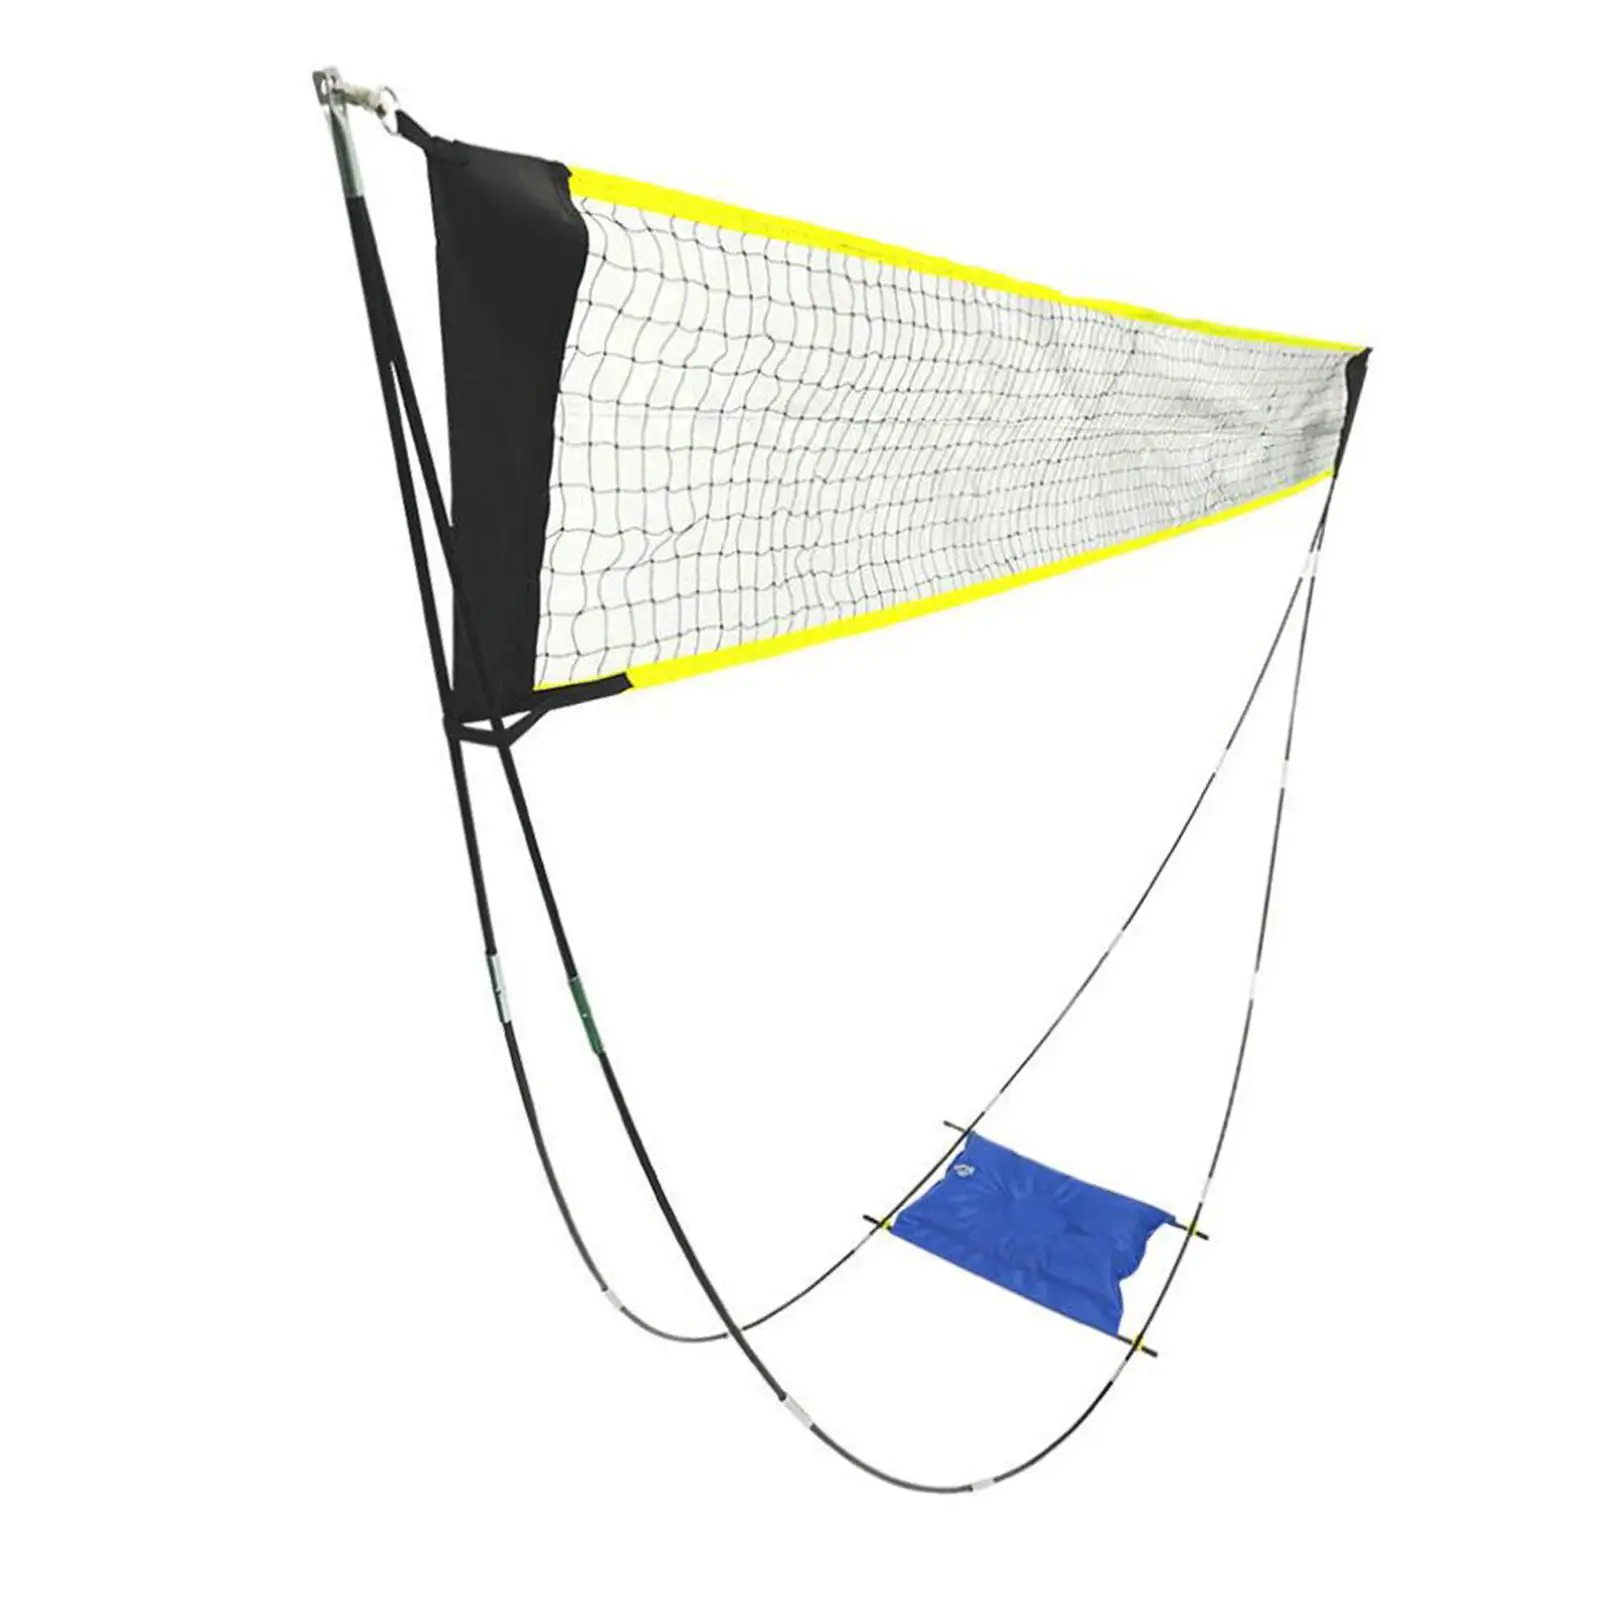 Badminton Net Folding Tennis Net Set for Exercise Indoor Outdoor Match